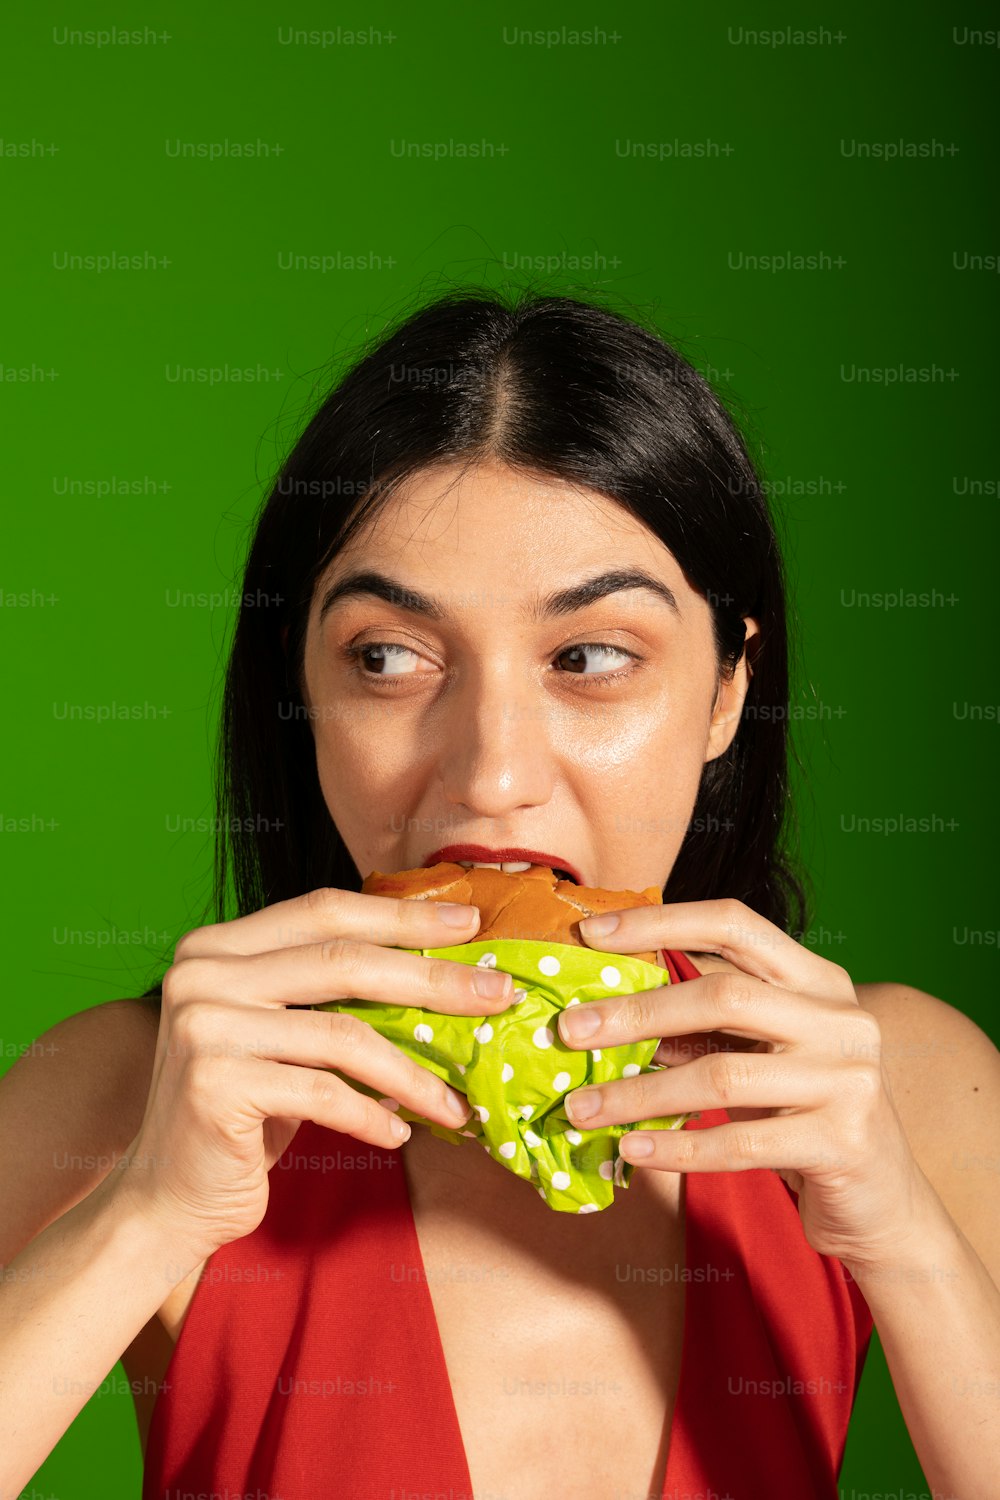 Una mujer con un vestido rojo comiendo un sándwich